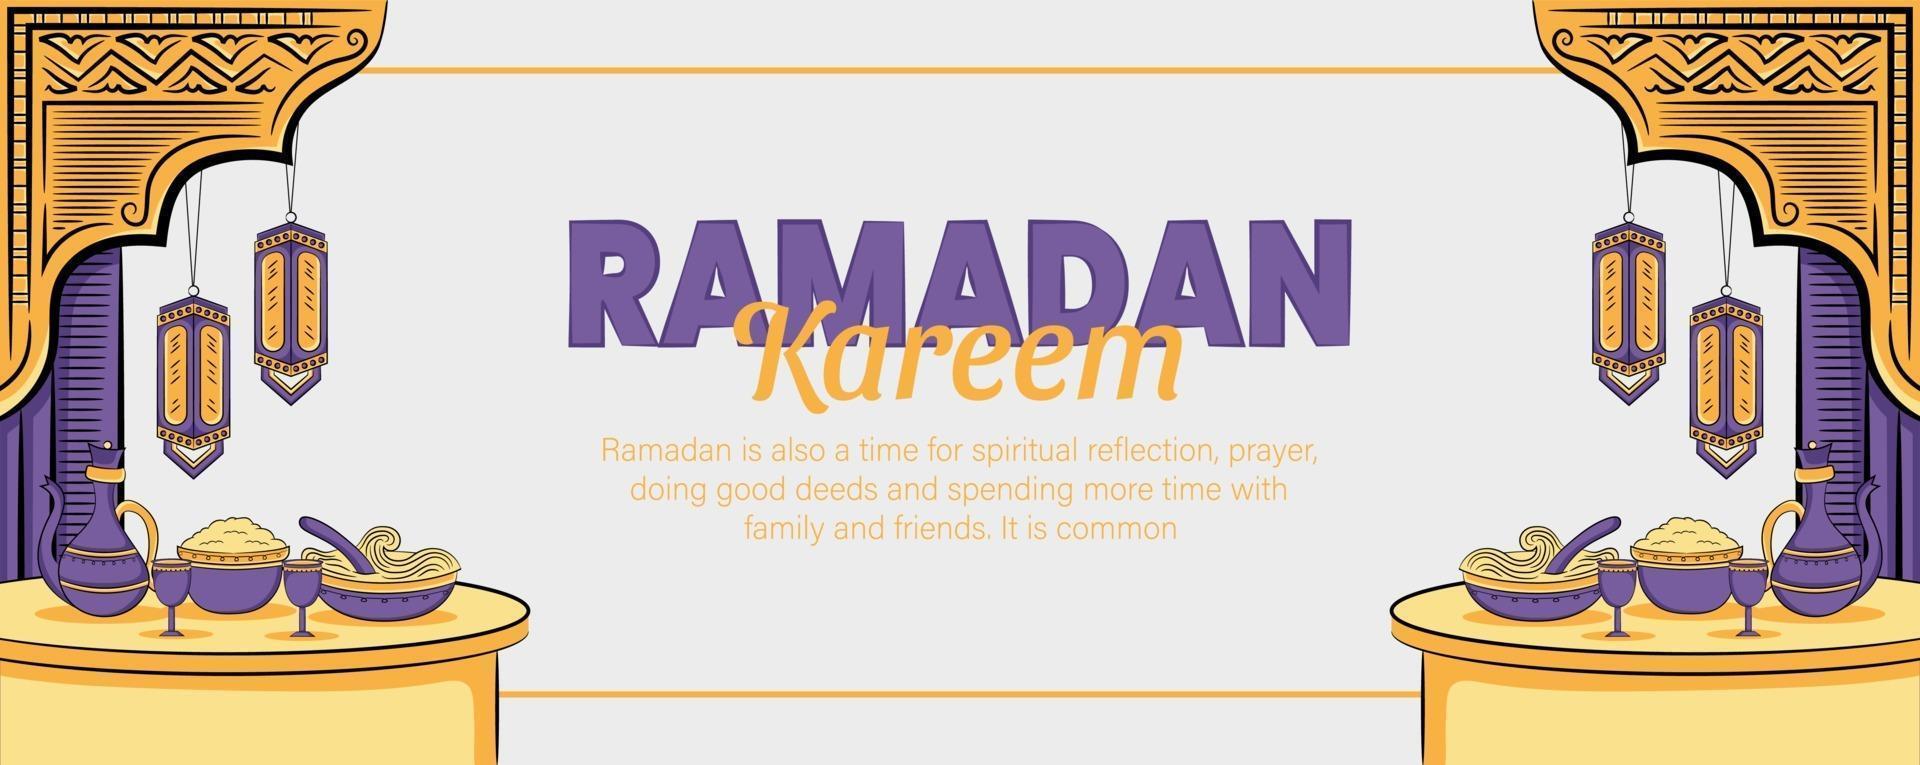 ramadan kareem banner met hand getrokken islamitische illustratie vector